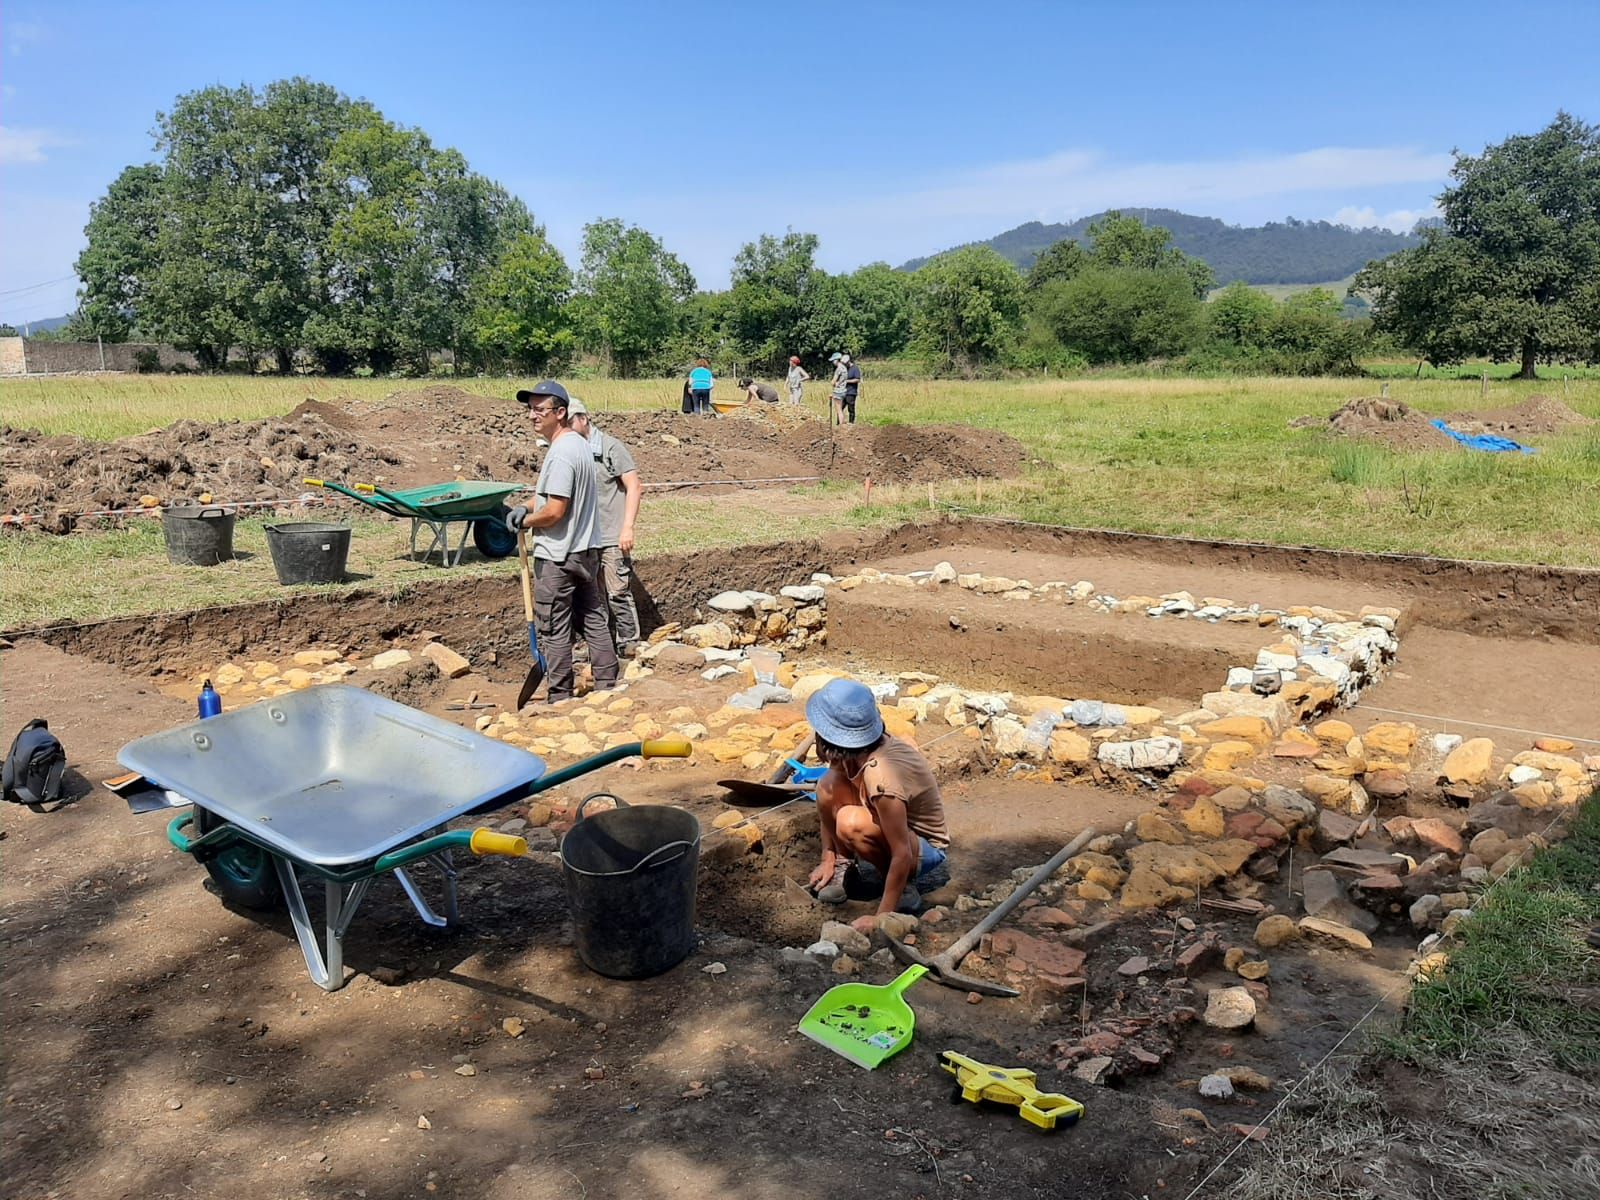 El yacimiento arqueológico Lucus Asturum, en Posada de Llanera: los expertos descubren que durante 400 años hubo población romana asentada allí